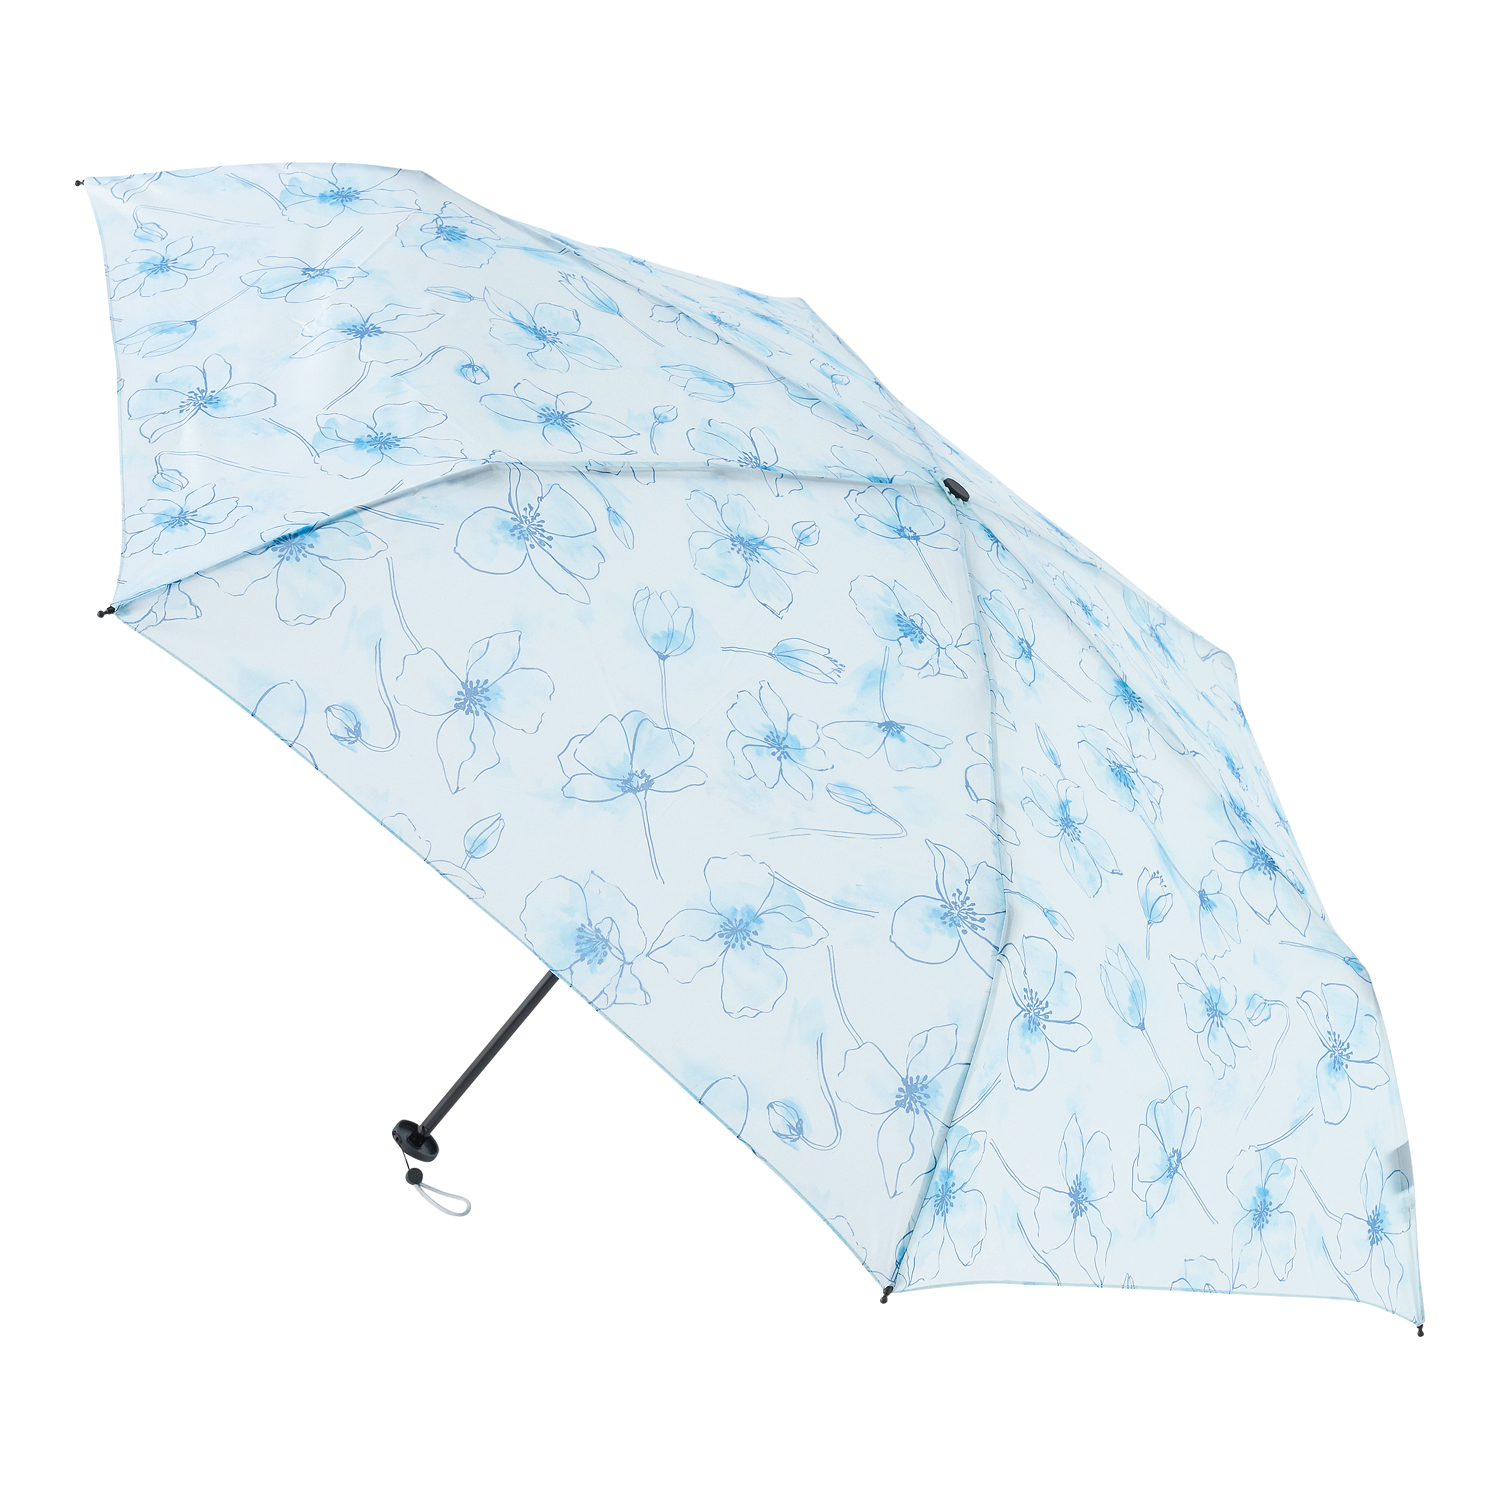 雨傘 60cm 耐風シリーズ 花柄 街並み イラスト 長傘 レディース  耐風傘 ジャンプ式 かわいい 晴雨兼用 UVカット加工 梅雨